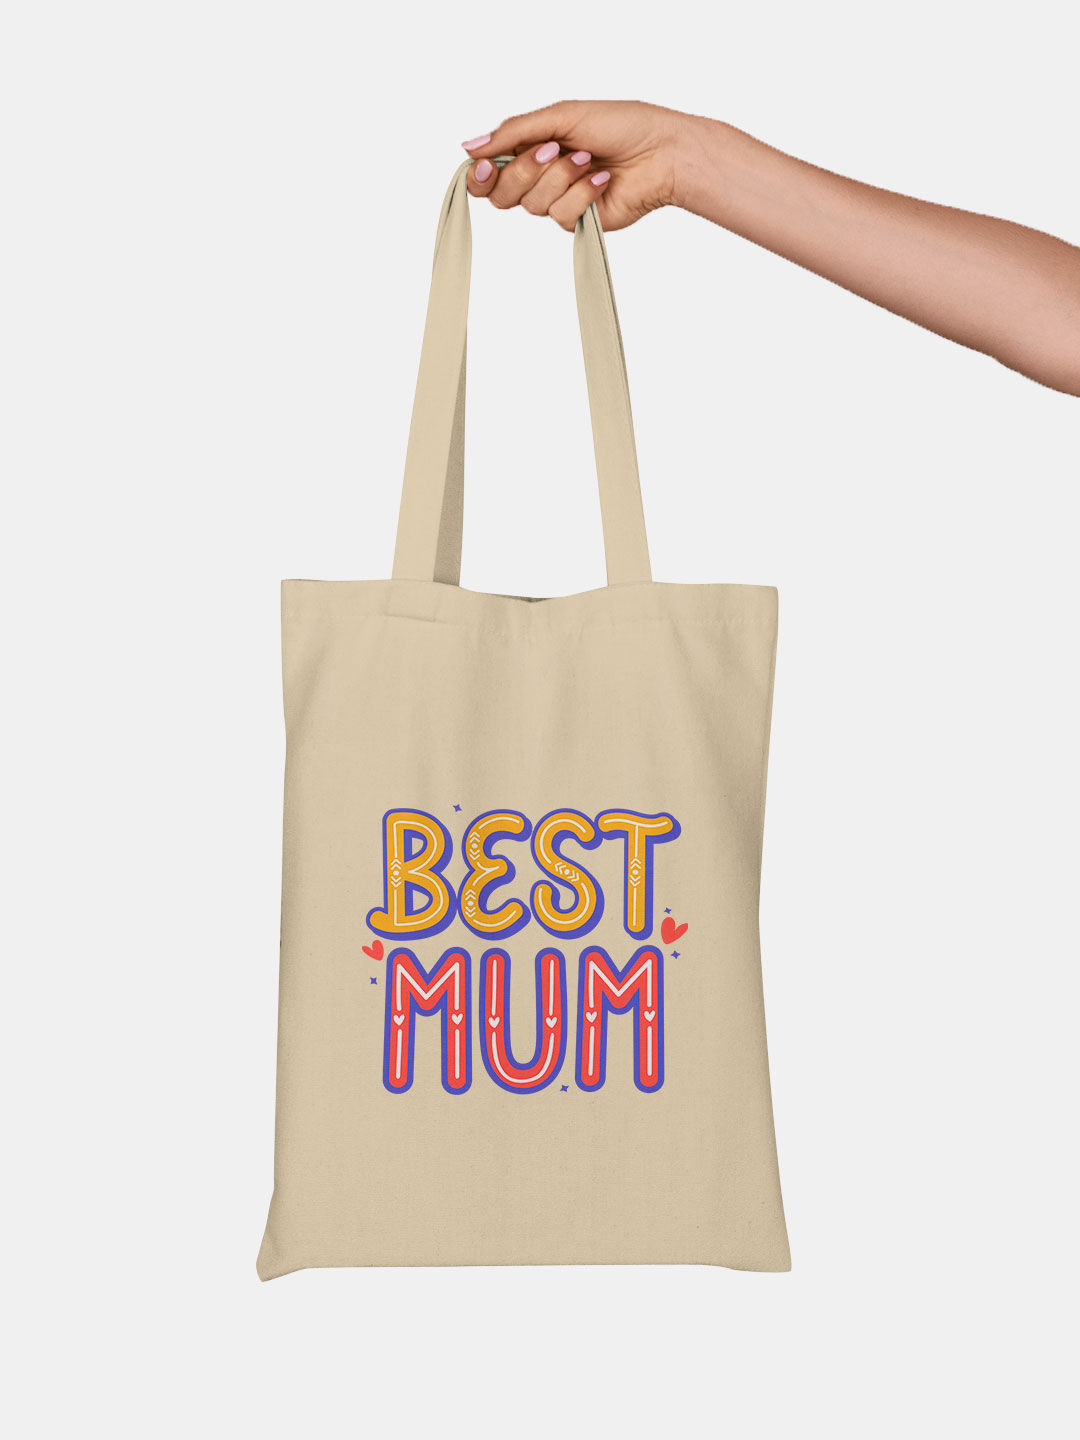 Buy Best Mum - Tote Bags Tote Bags Online